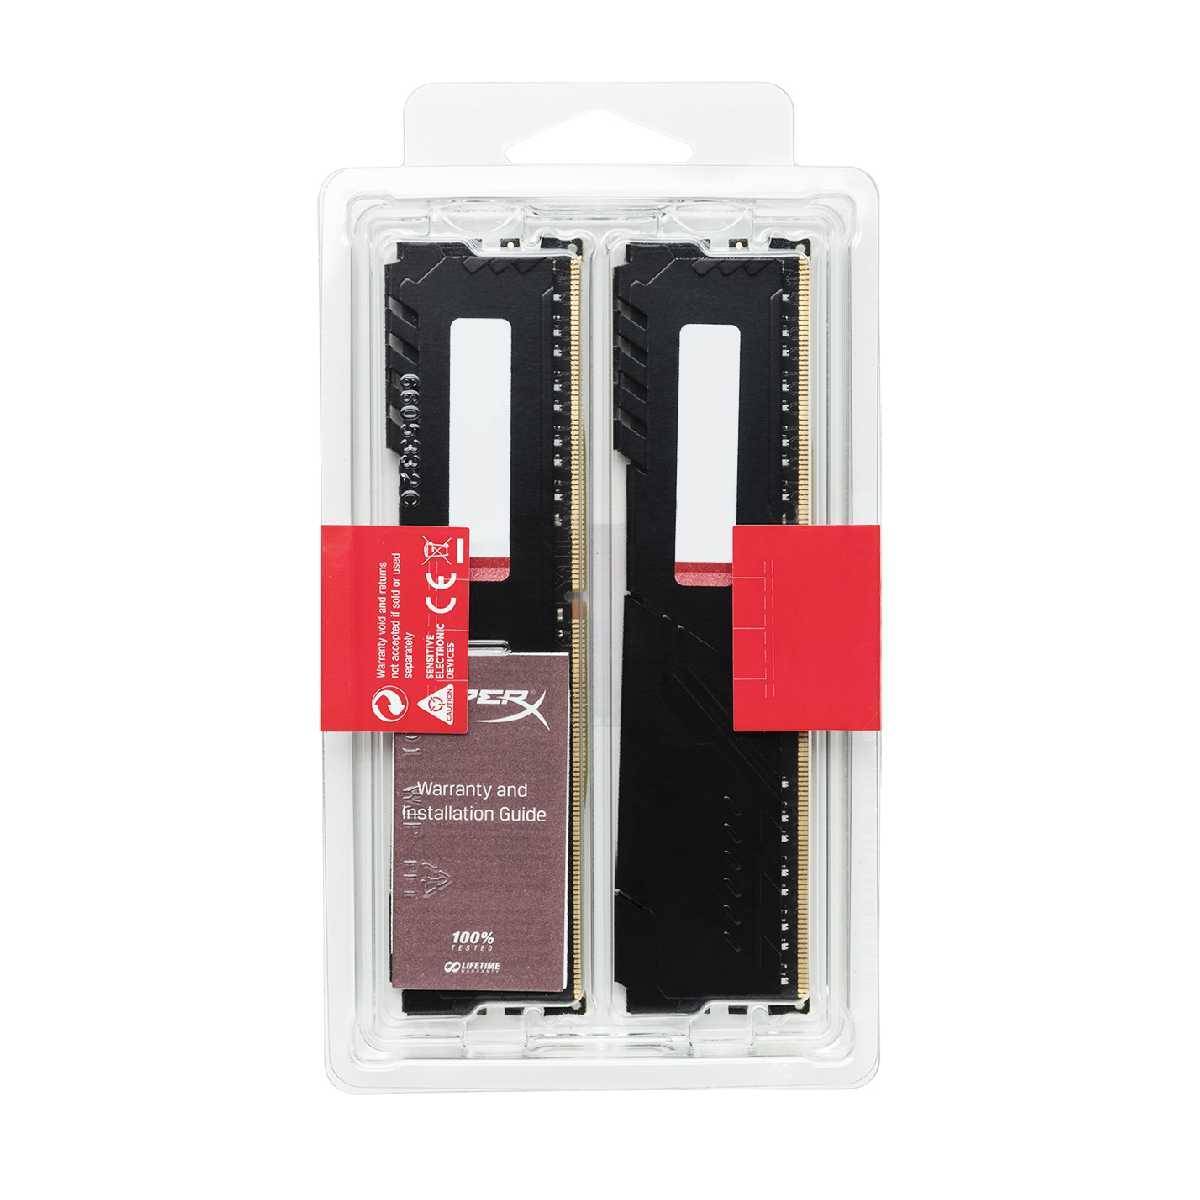 Speicher DDR4-3200 16GB 2x8GB Kingston Hyper